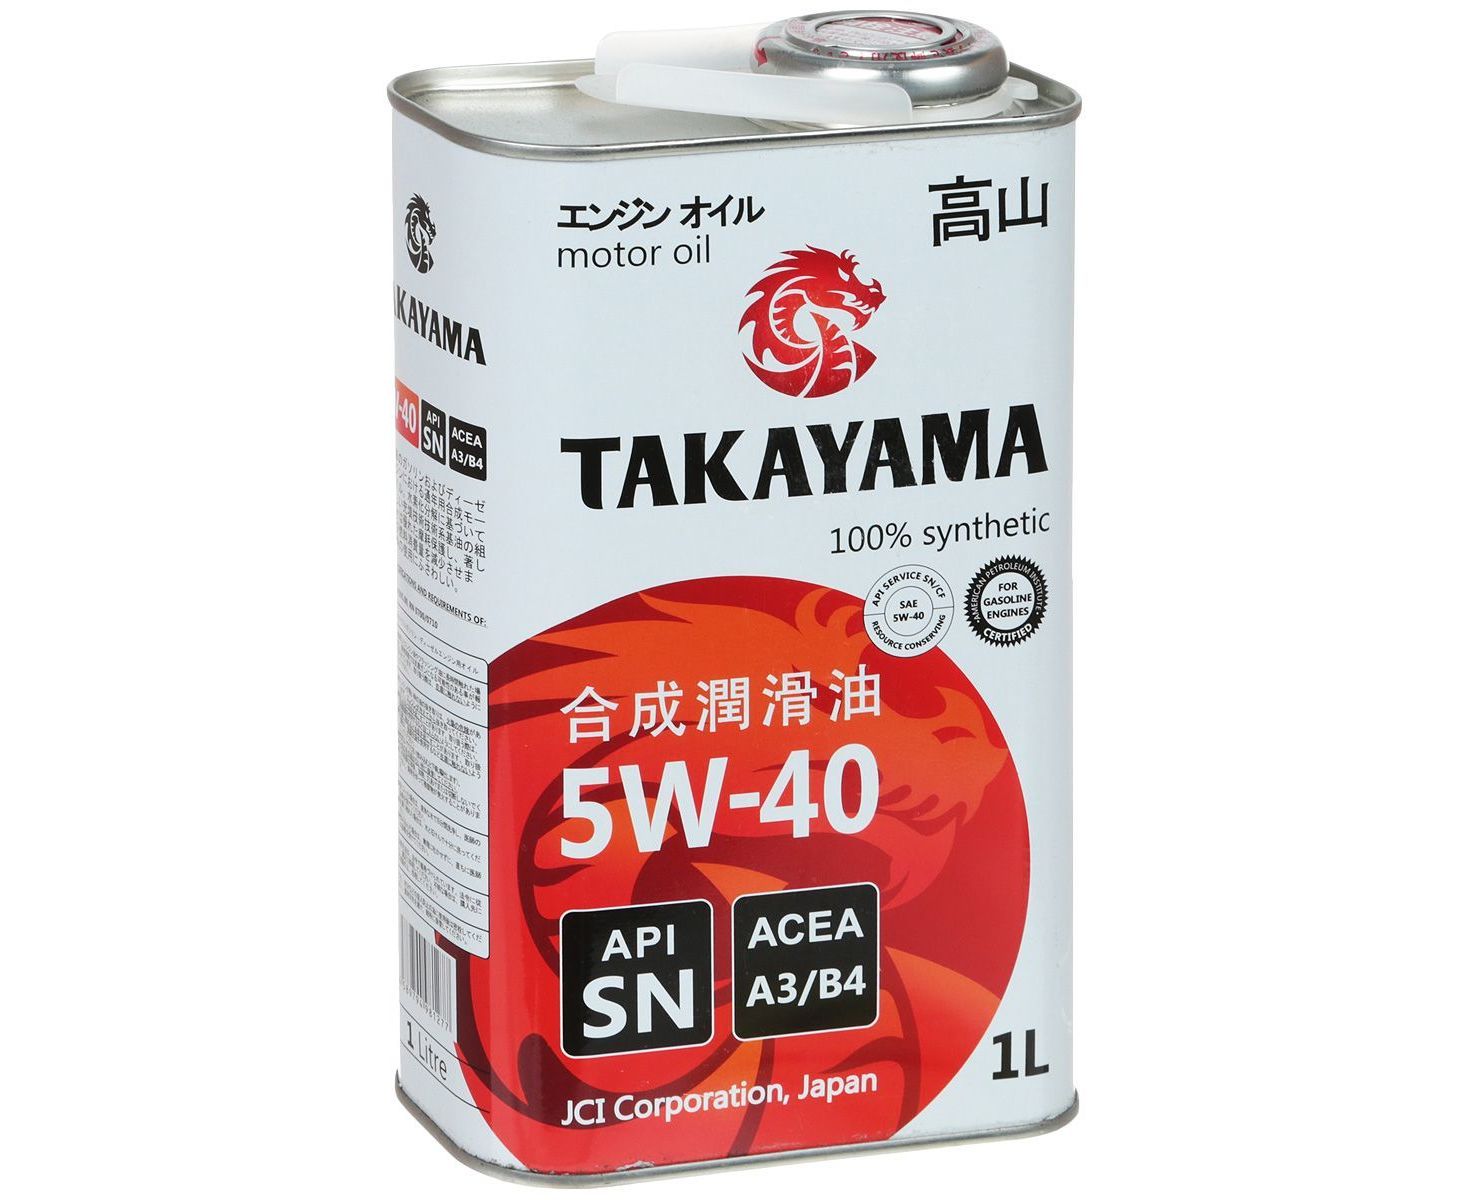 Японское масло 5w40. Такаяма 5w40 синтетика. Моторное масло Takayama 5w-40. Японское масло 5w40 Такаяма. Takayama 5w-40 API SN/CF.